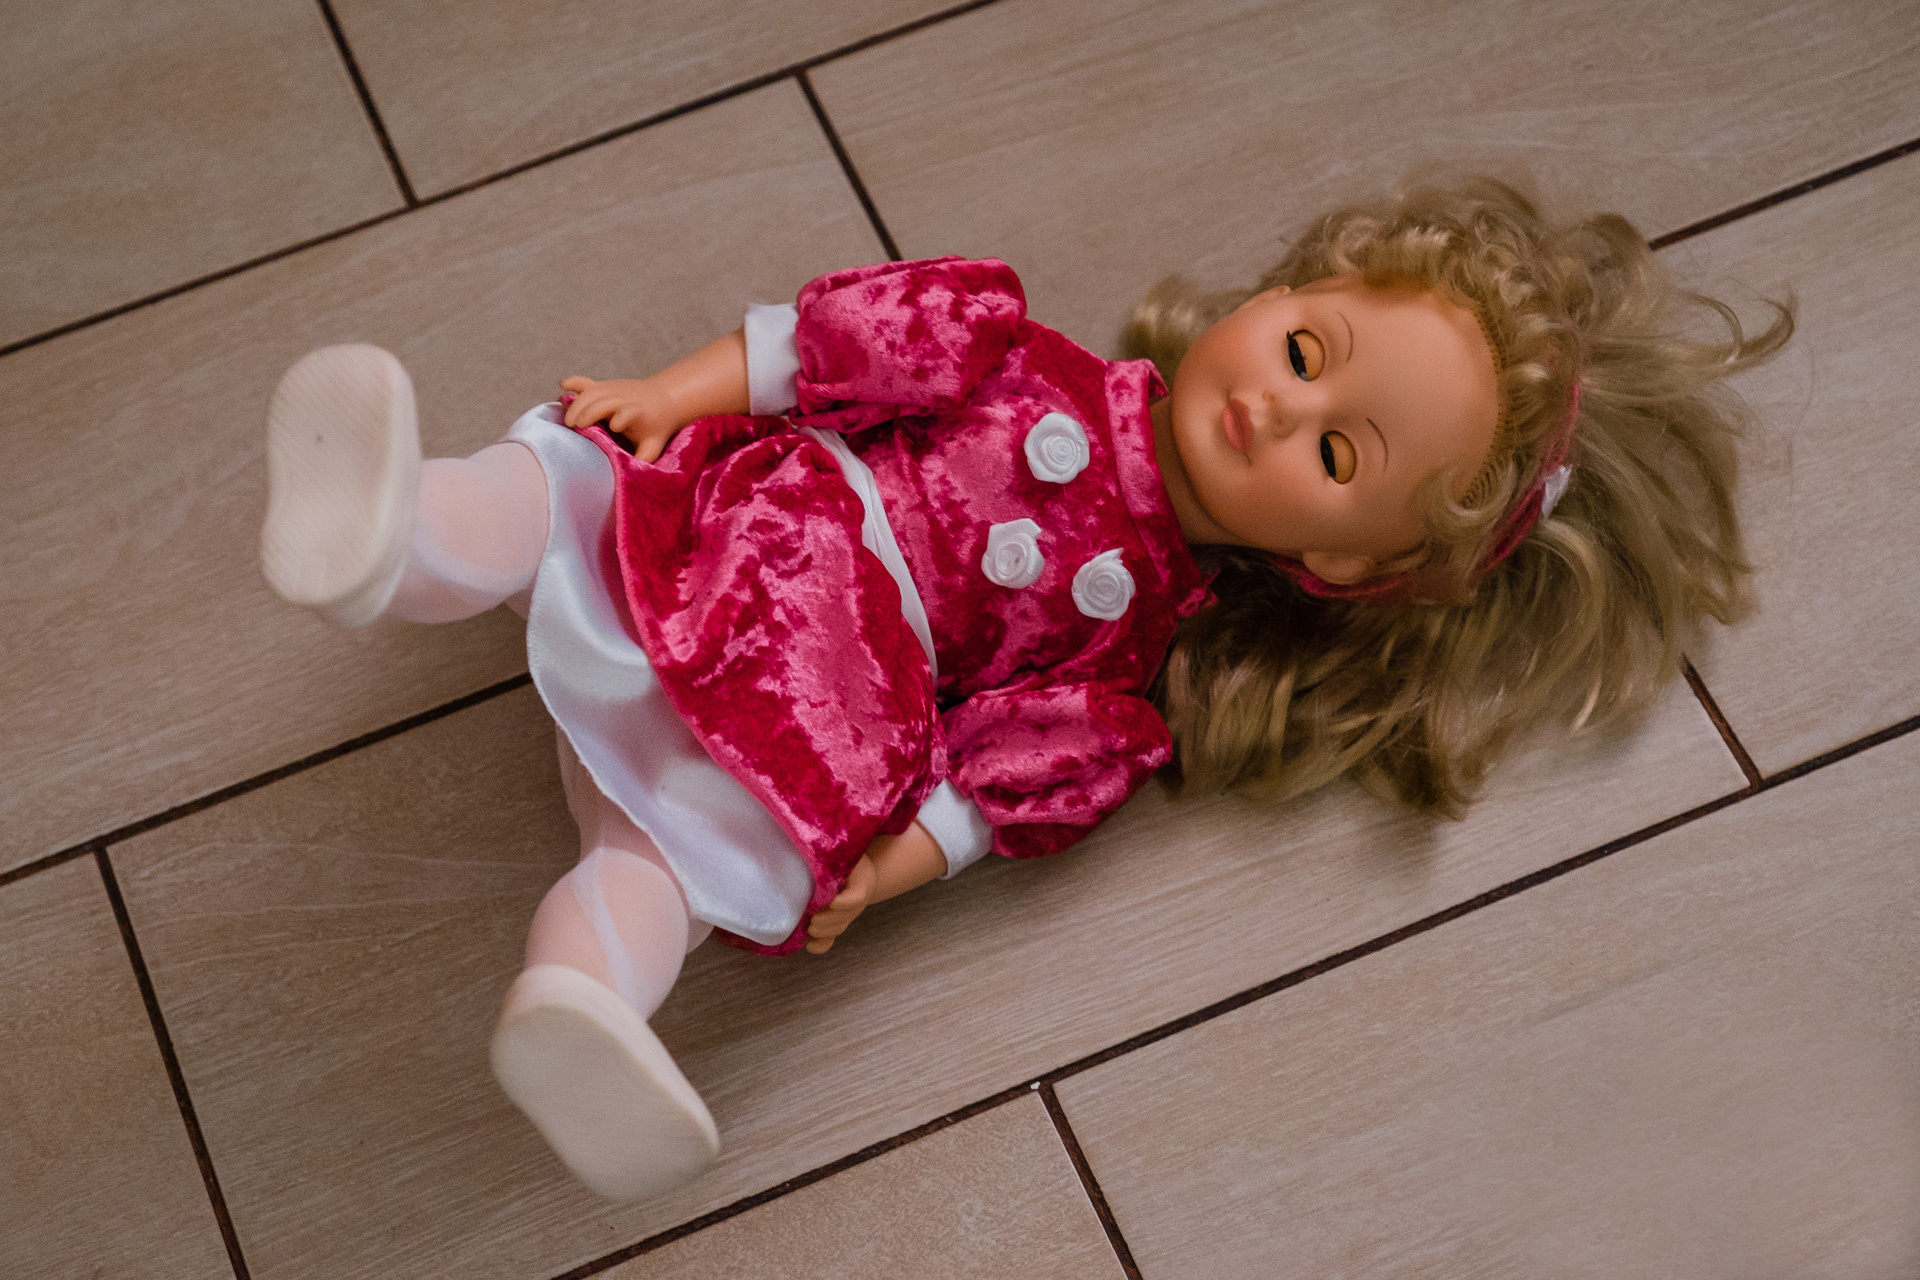 «Если мальчик играет куклой, значит, это игрушка для мальчика», — считает психолог